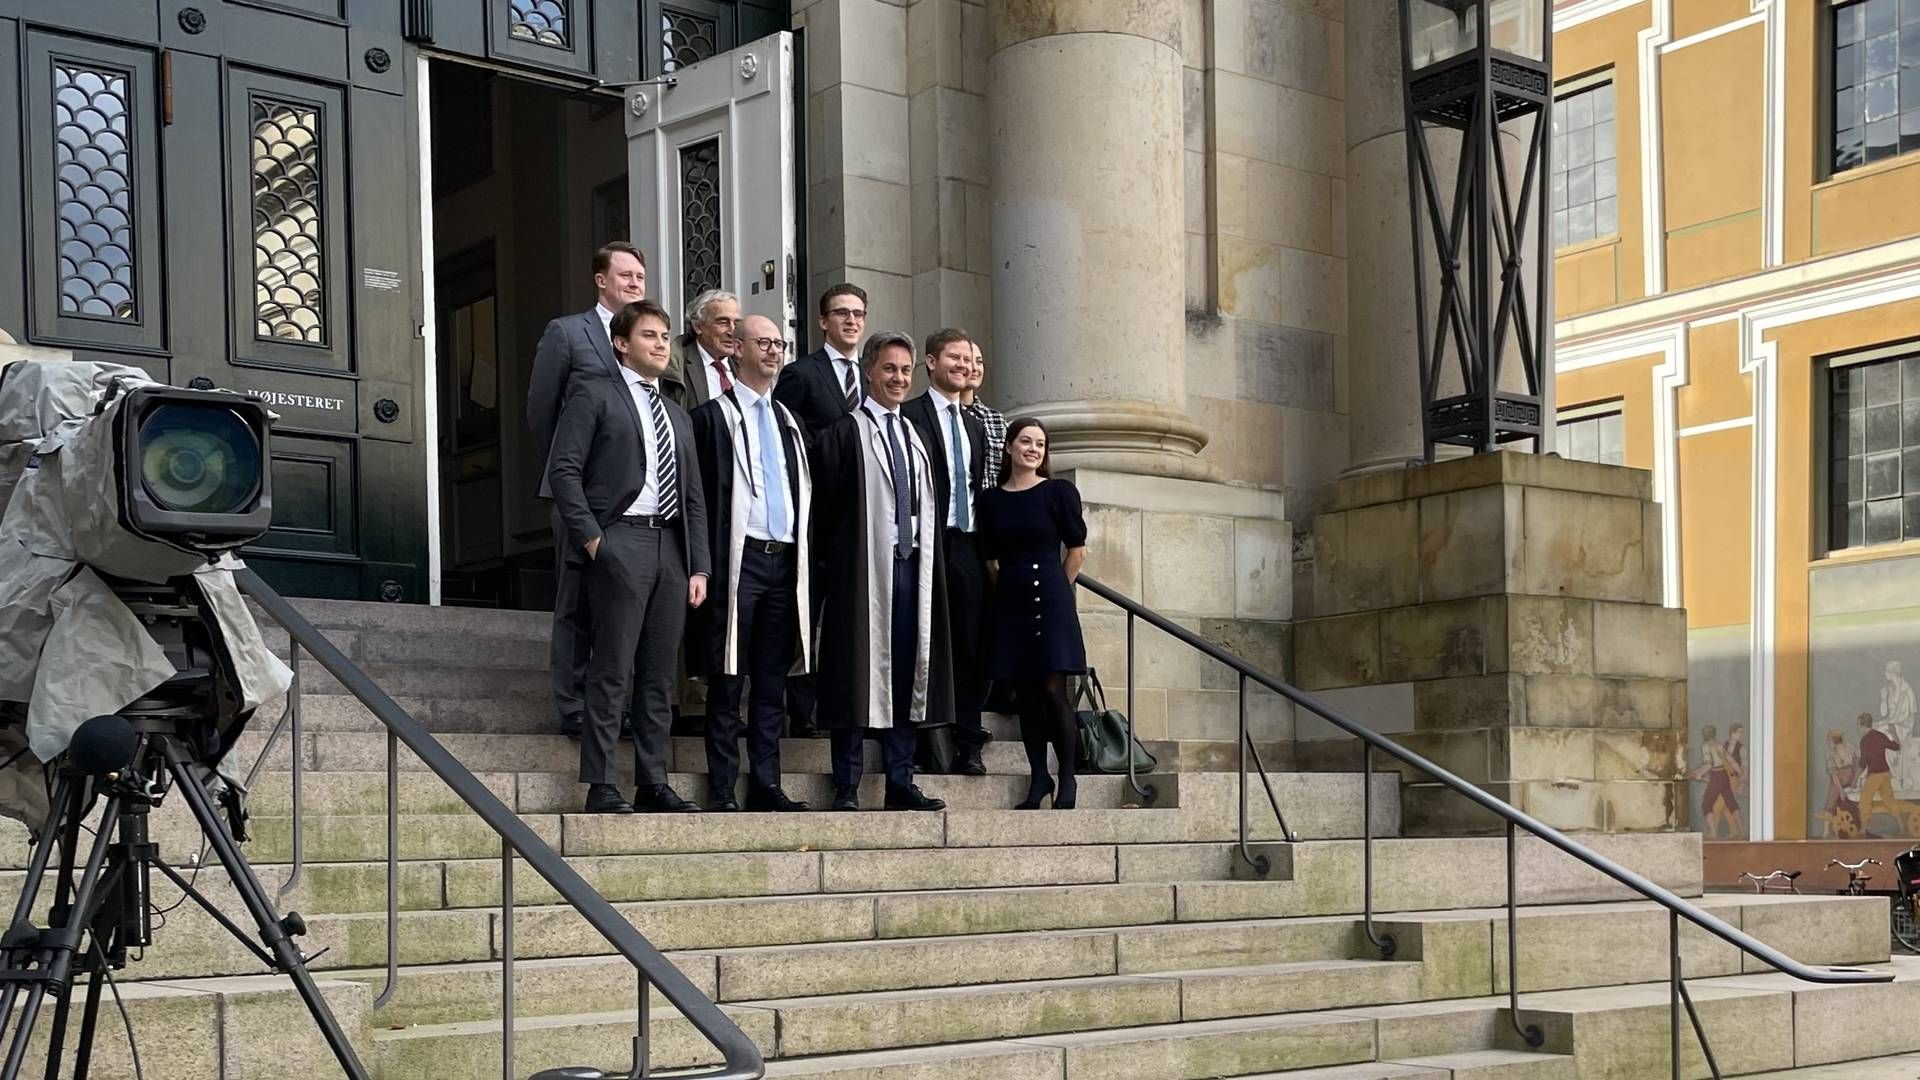 Holdet fra Bruun & Hjejle med Ole Spiermann i front markerede mandag eftermiddag sagens afslutning ved at stille op til fotografering foran Højesteret. | Foto: Steffen Moses/watch Medier